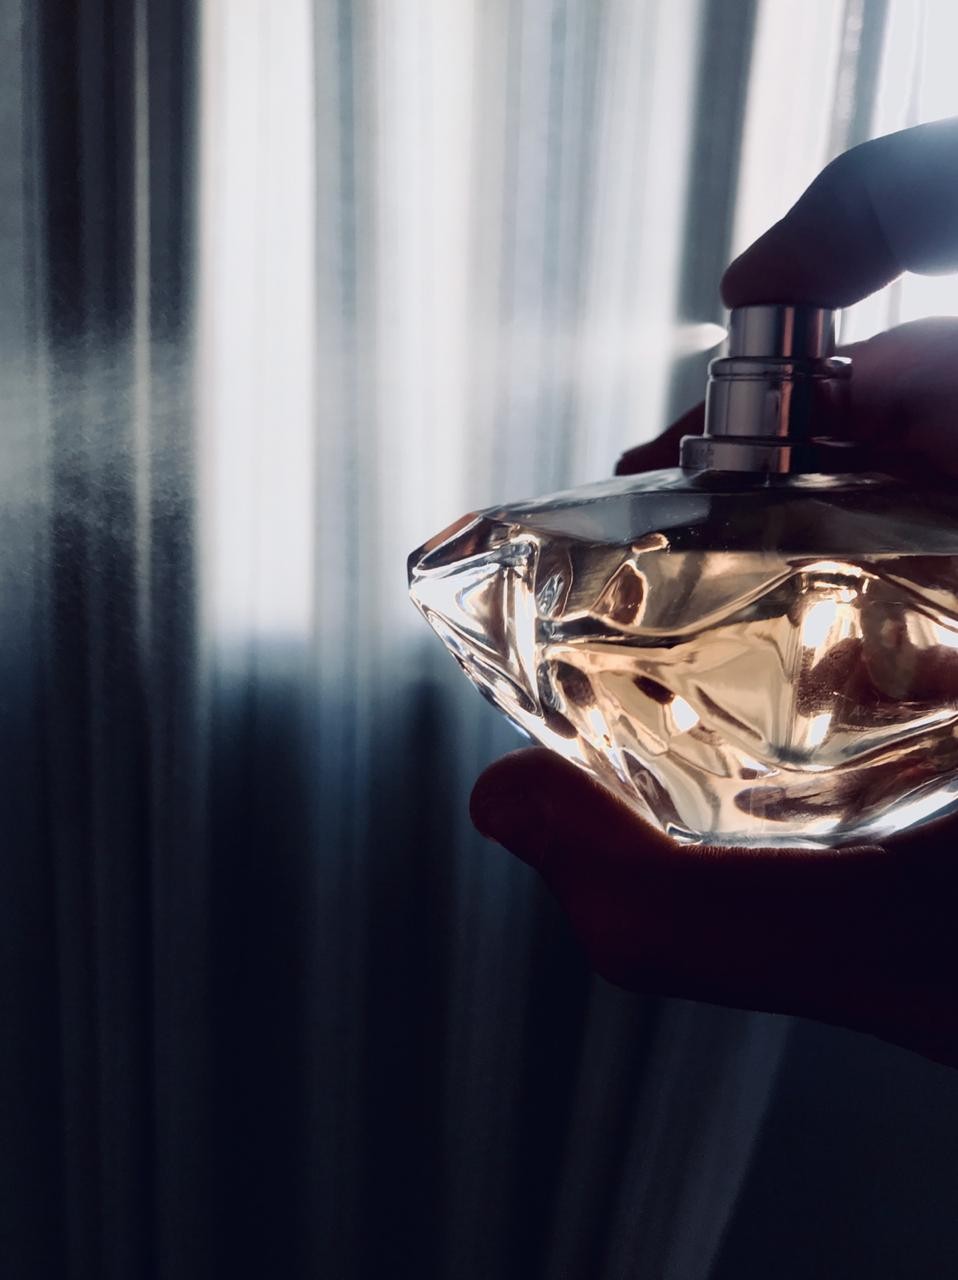 Perfume Lady Emblem sendo borrifado no ar (Foto: Acervo Pessoal)